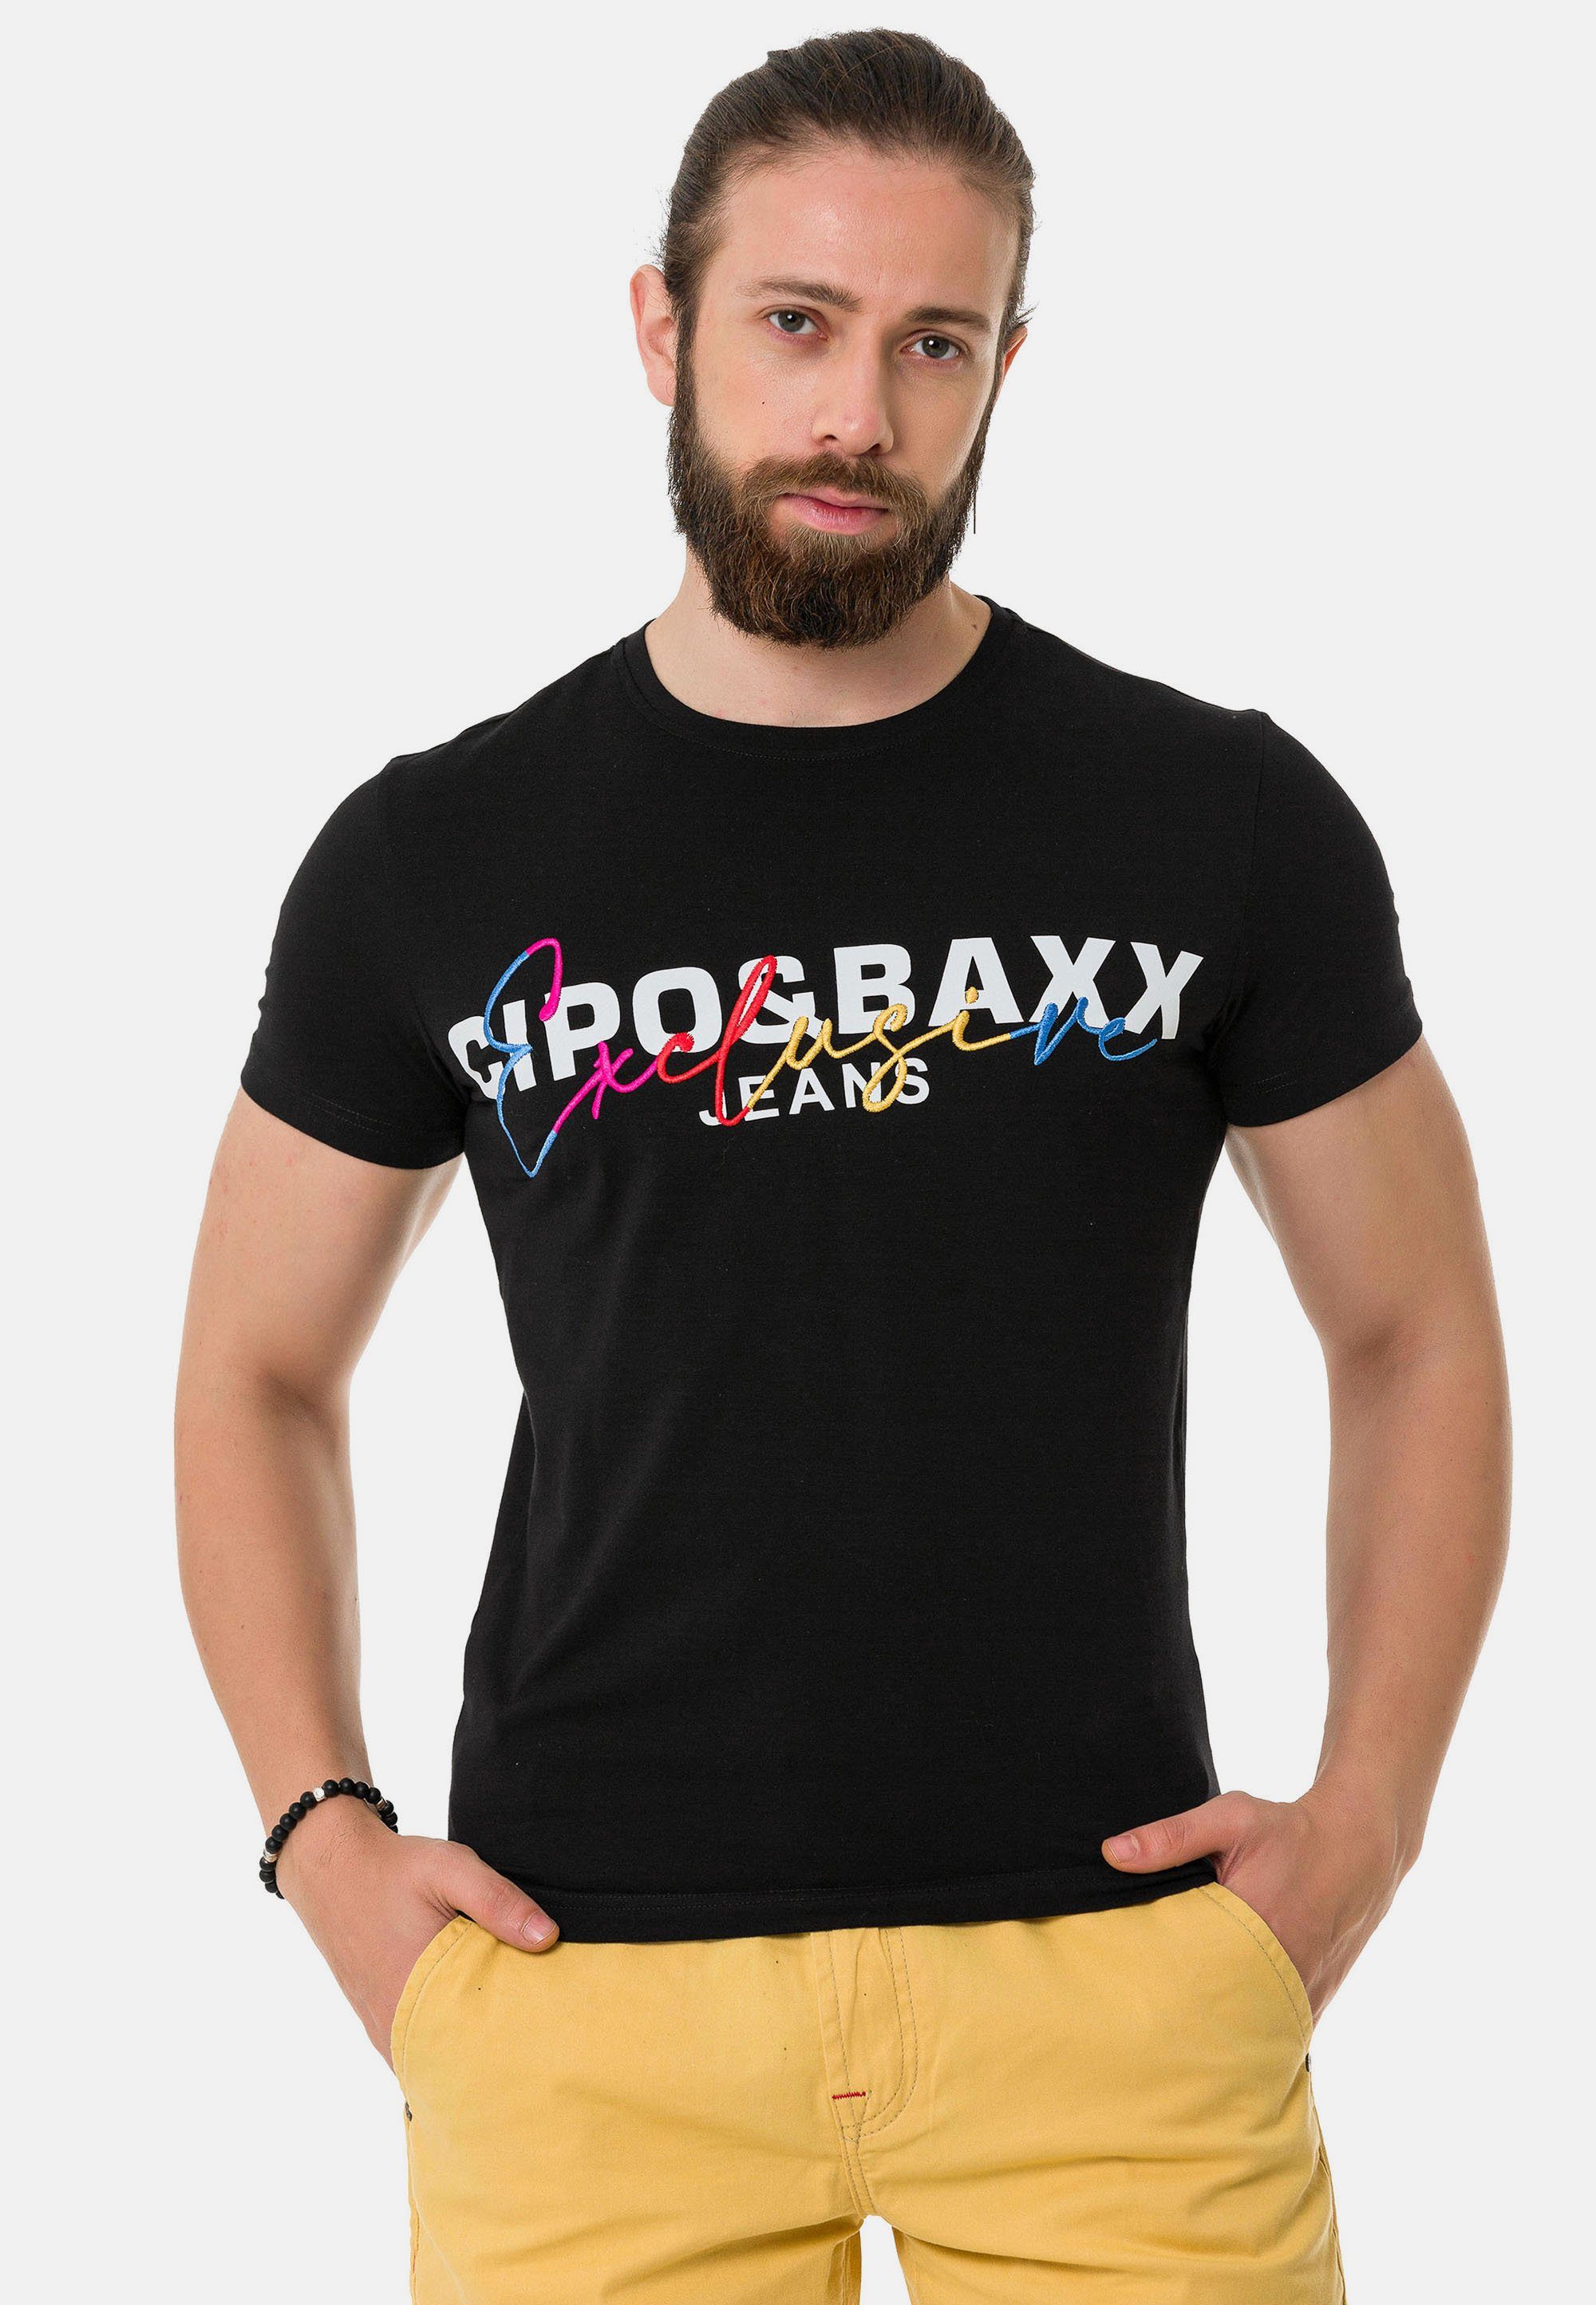 Cipo & Baxx T-Shirt mit Markenprint schwarz